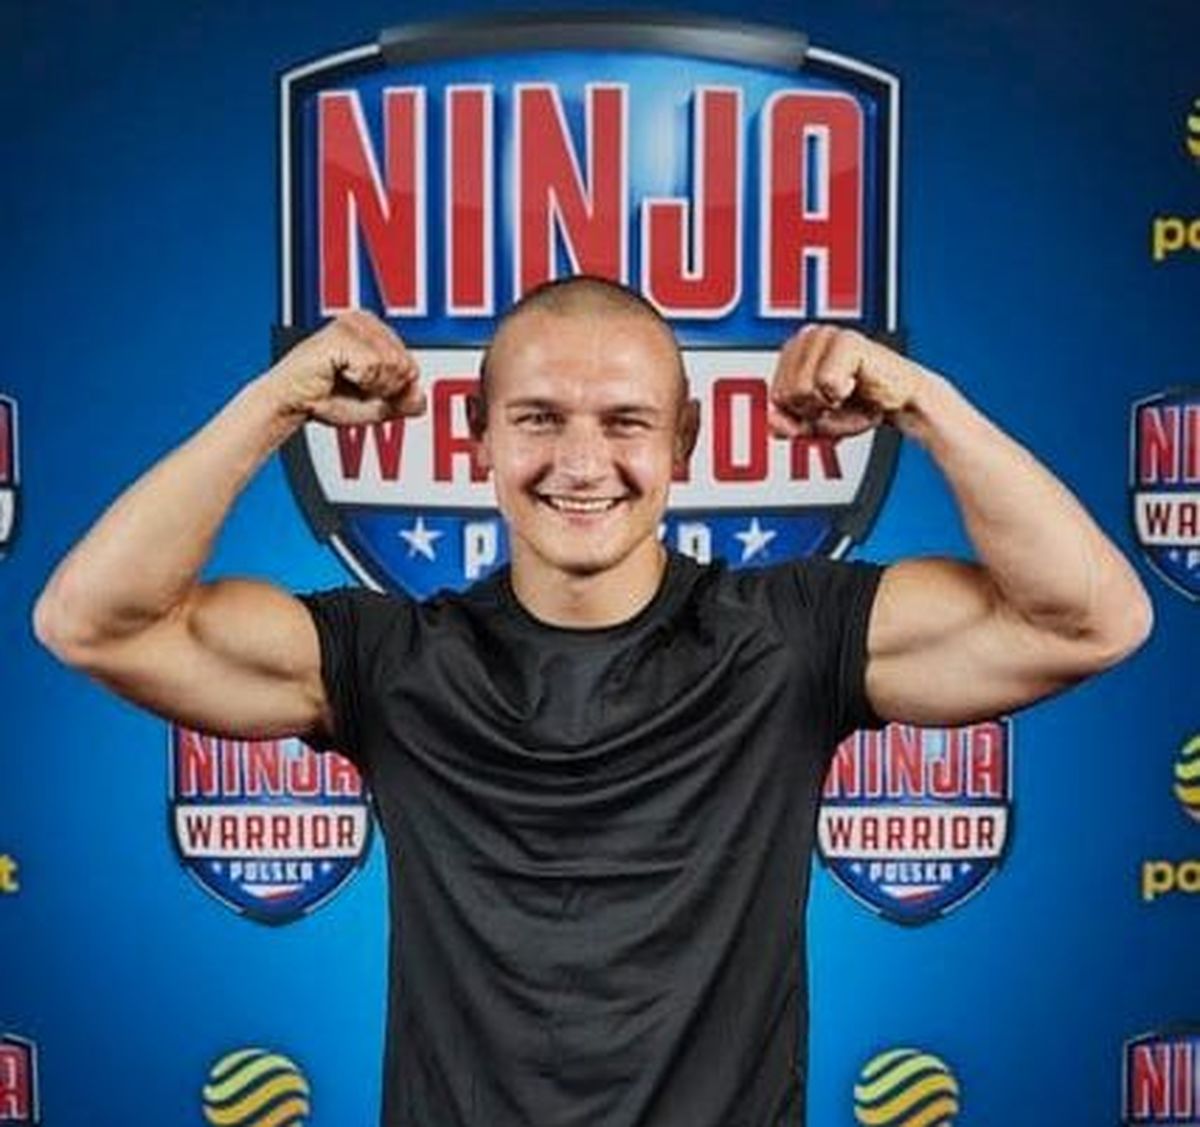 Nauczyciel ze szkoły w Andrychowie wystąpi w Ninja Warrior Polska